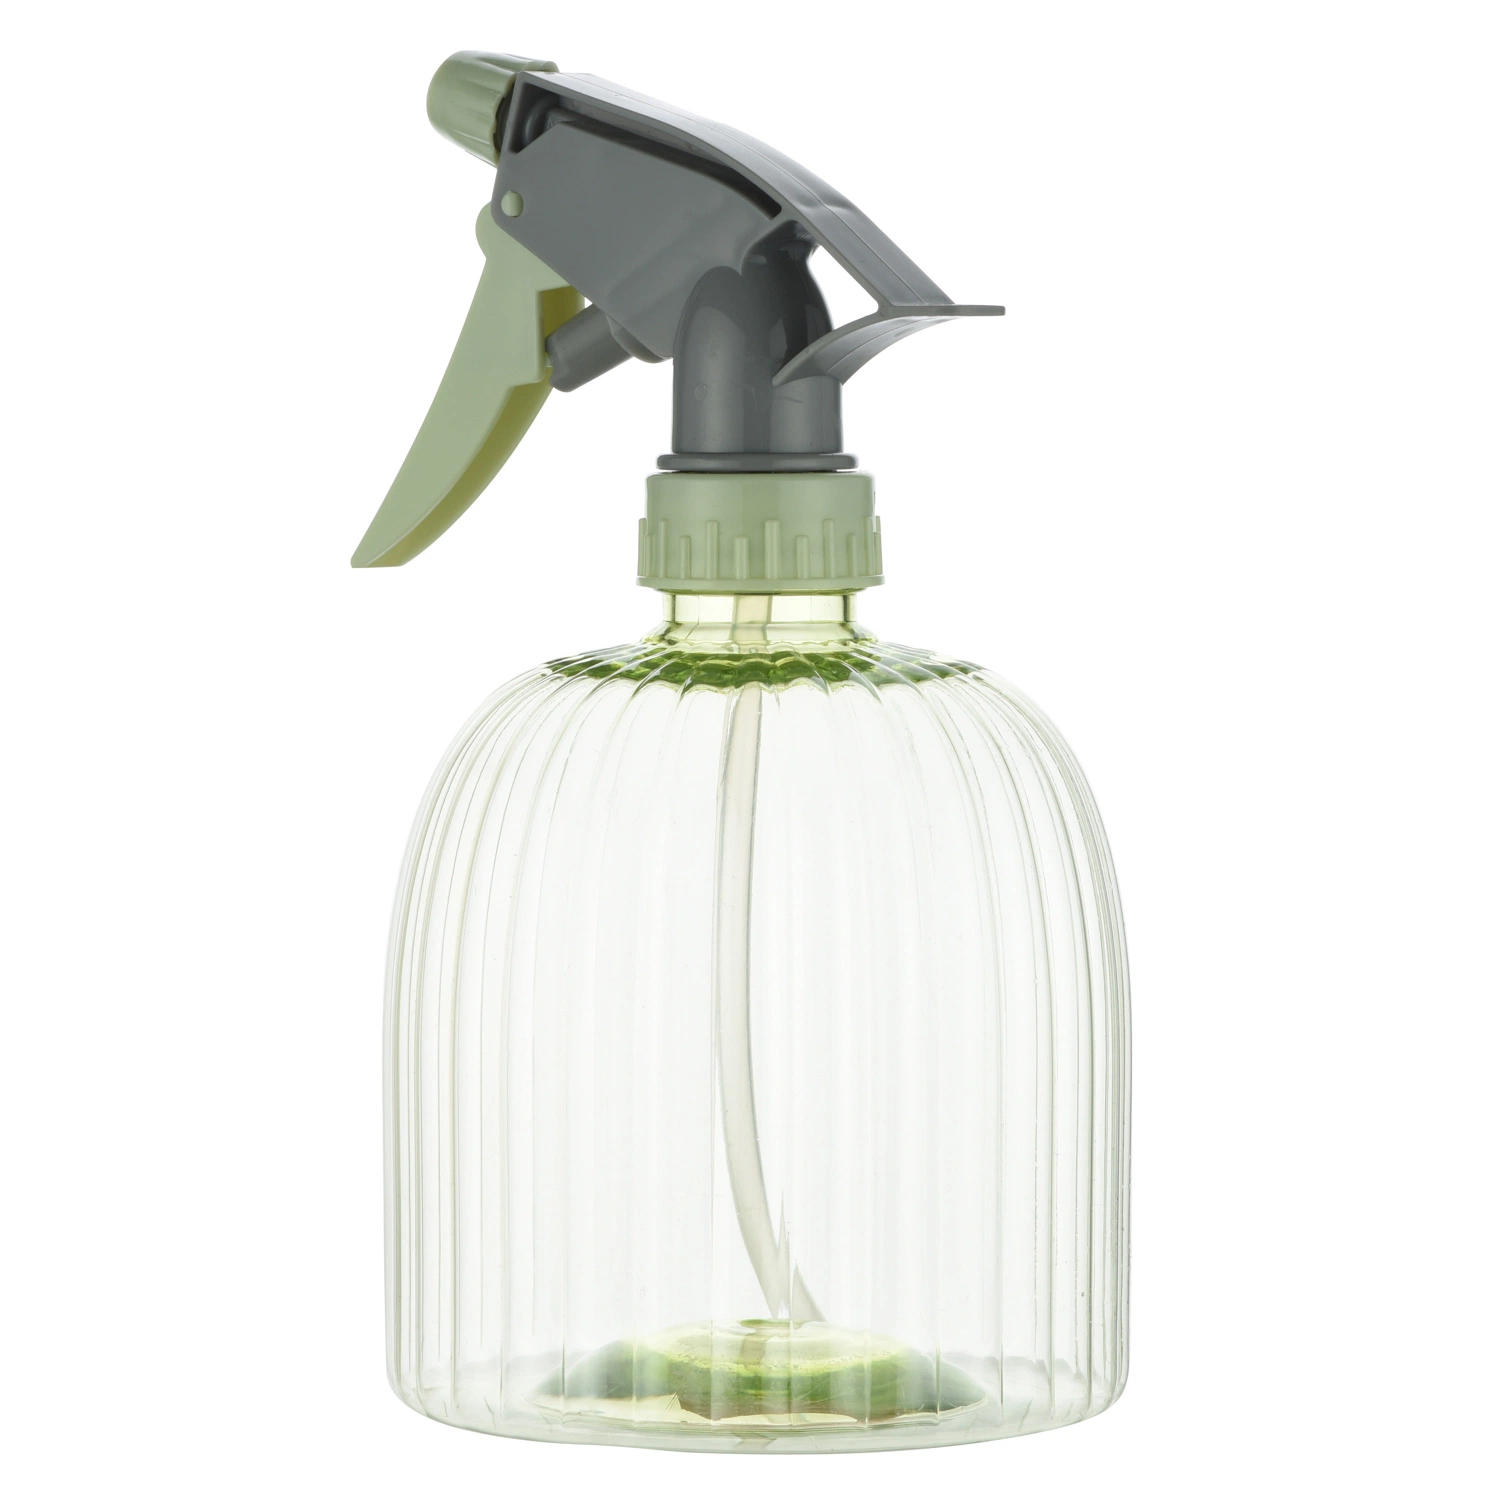 Olive Green Sprayer Bottles for Household Cleaning